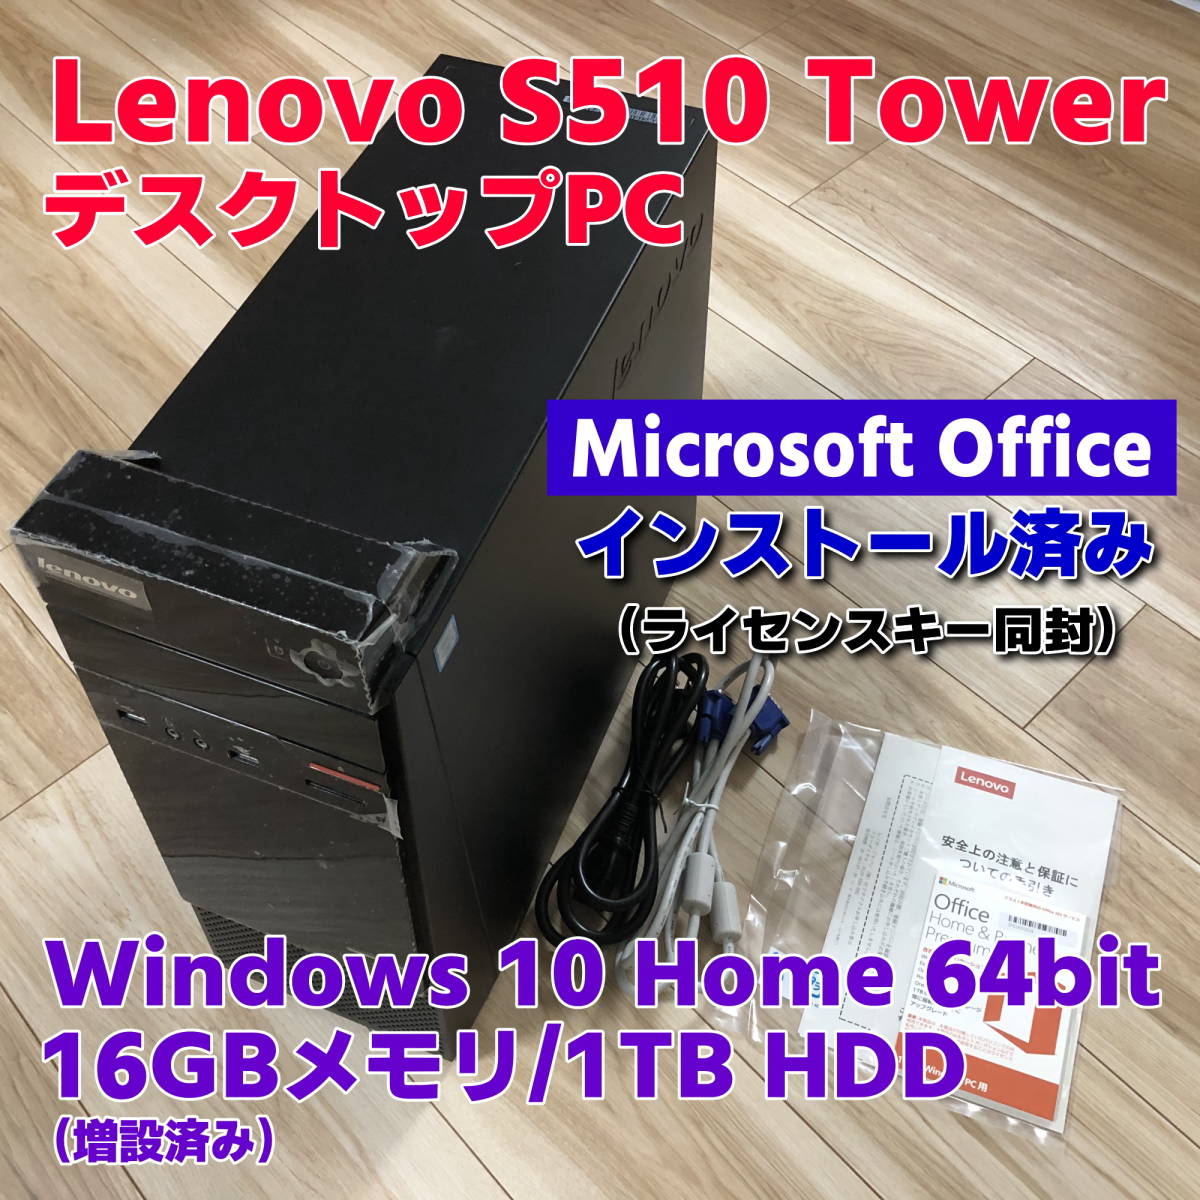 【中古】デスクトップPC・LenovoS510・Corei7-6700・Microsoft Office付き・16GBメモリ・1TB HDD・Windows10＜動作確認&初期化済＞_画像1